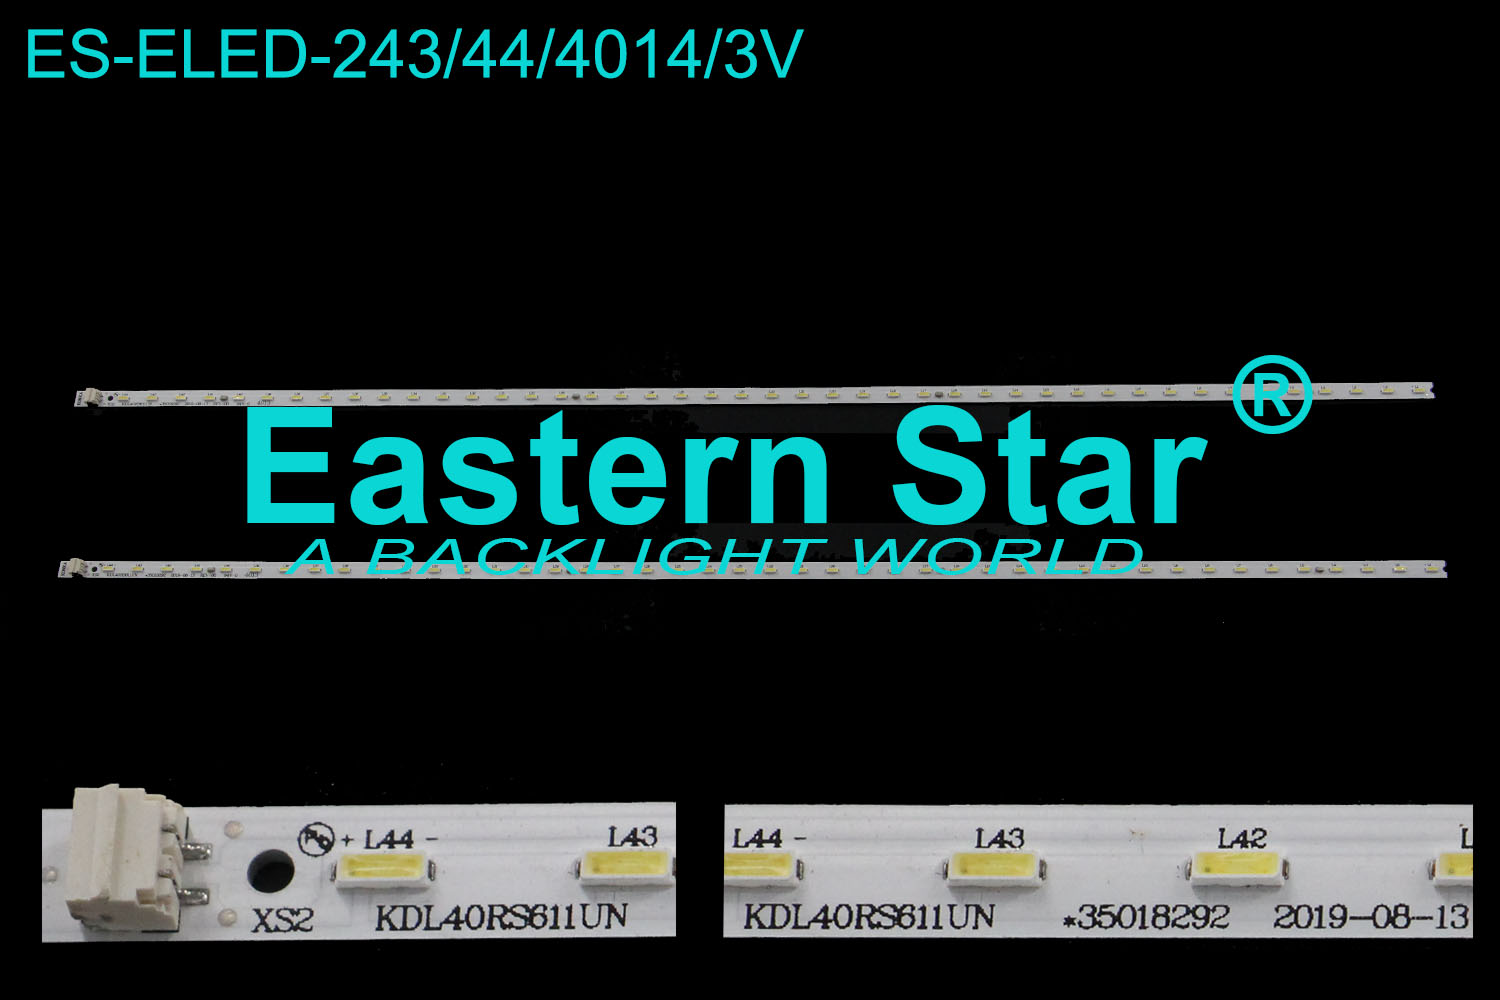 ES-ELED-243 ELED/EDGE TV backlight 40'' 44LEDs use for Konka KDL40RS611UN 35018292 2019-08-13 REV-00 LED STRIPS(2)